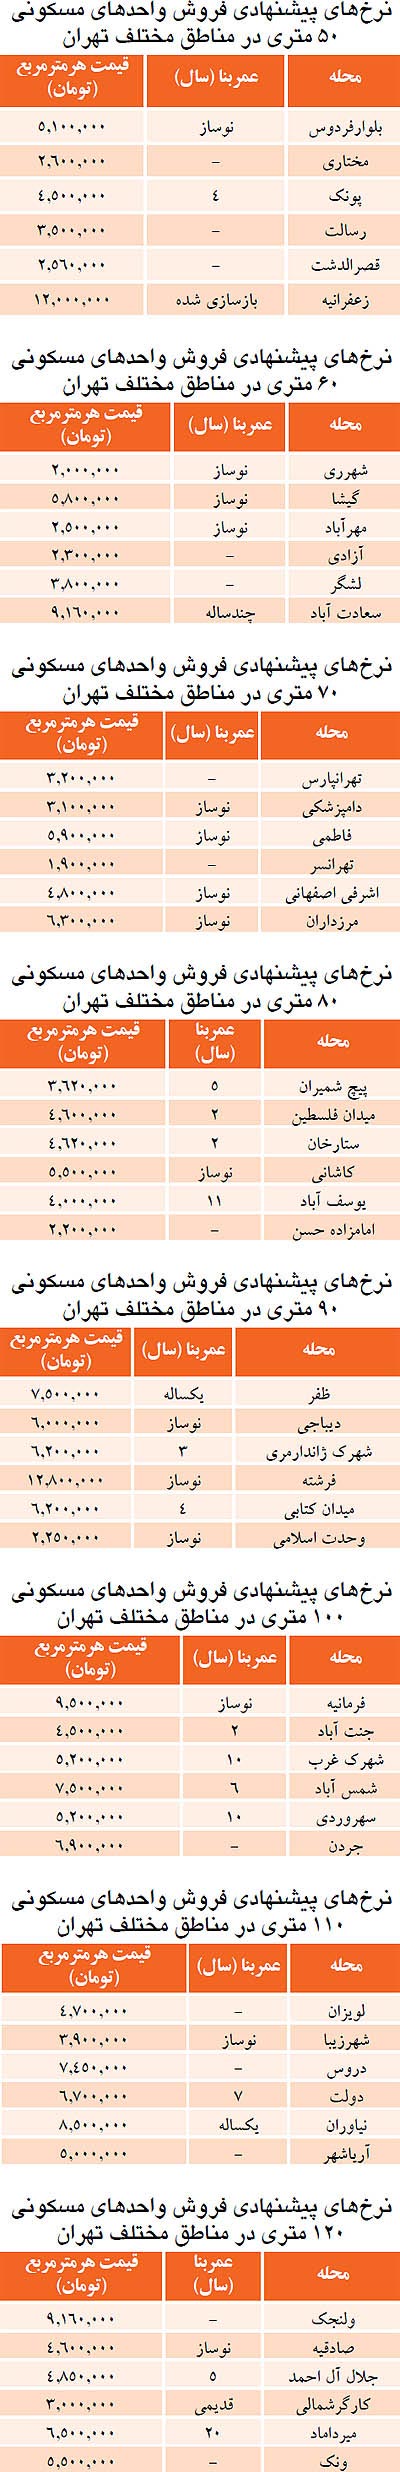 قیمت آپارتمان های 50 متری در تهران